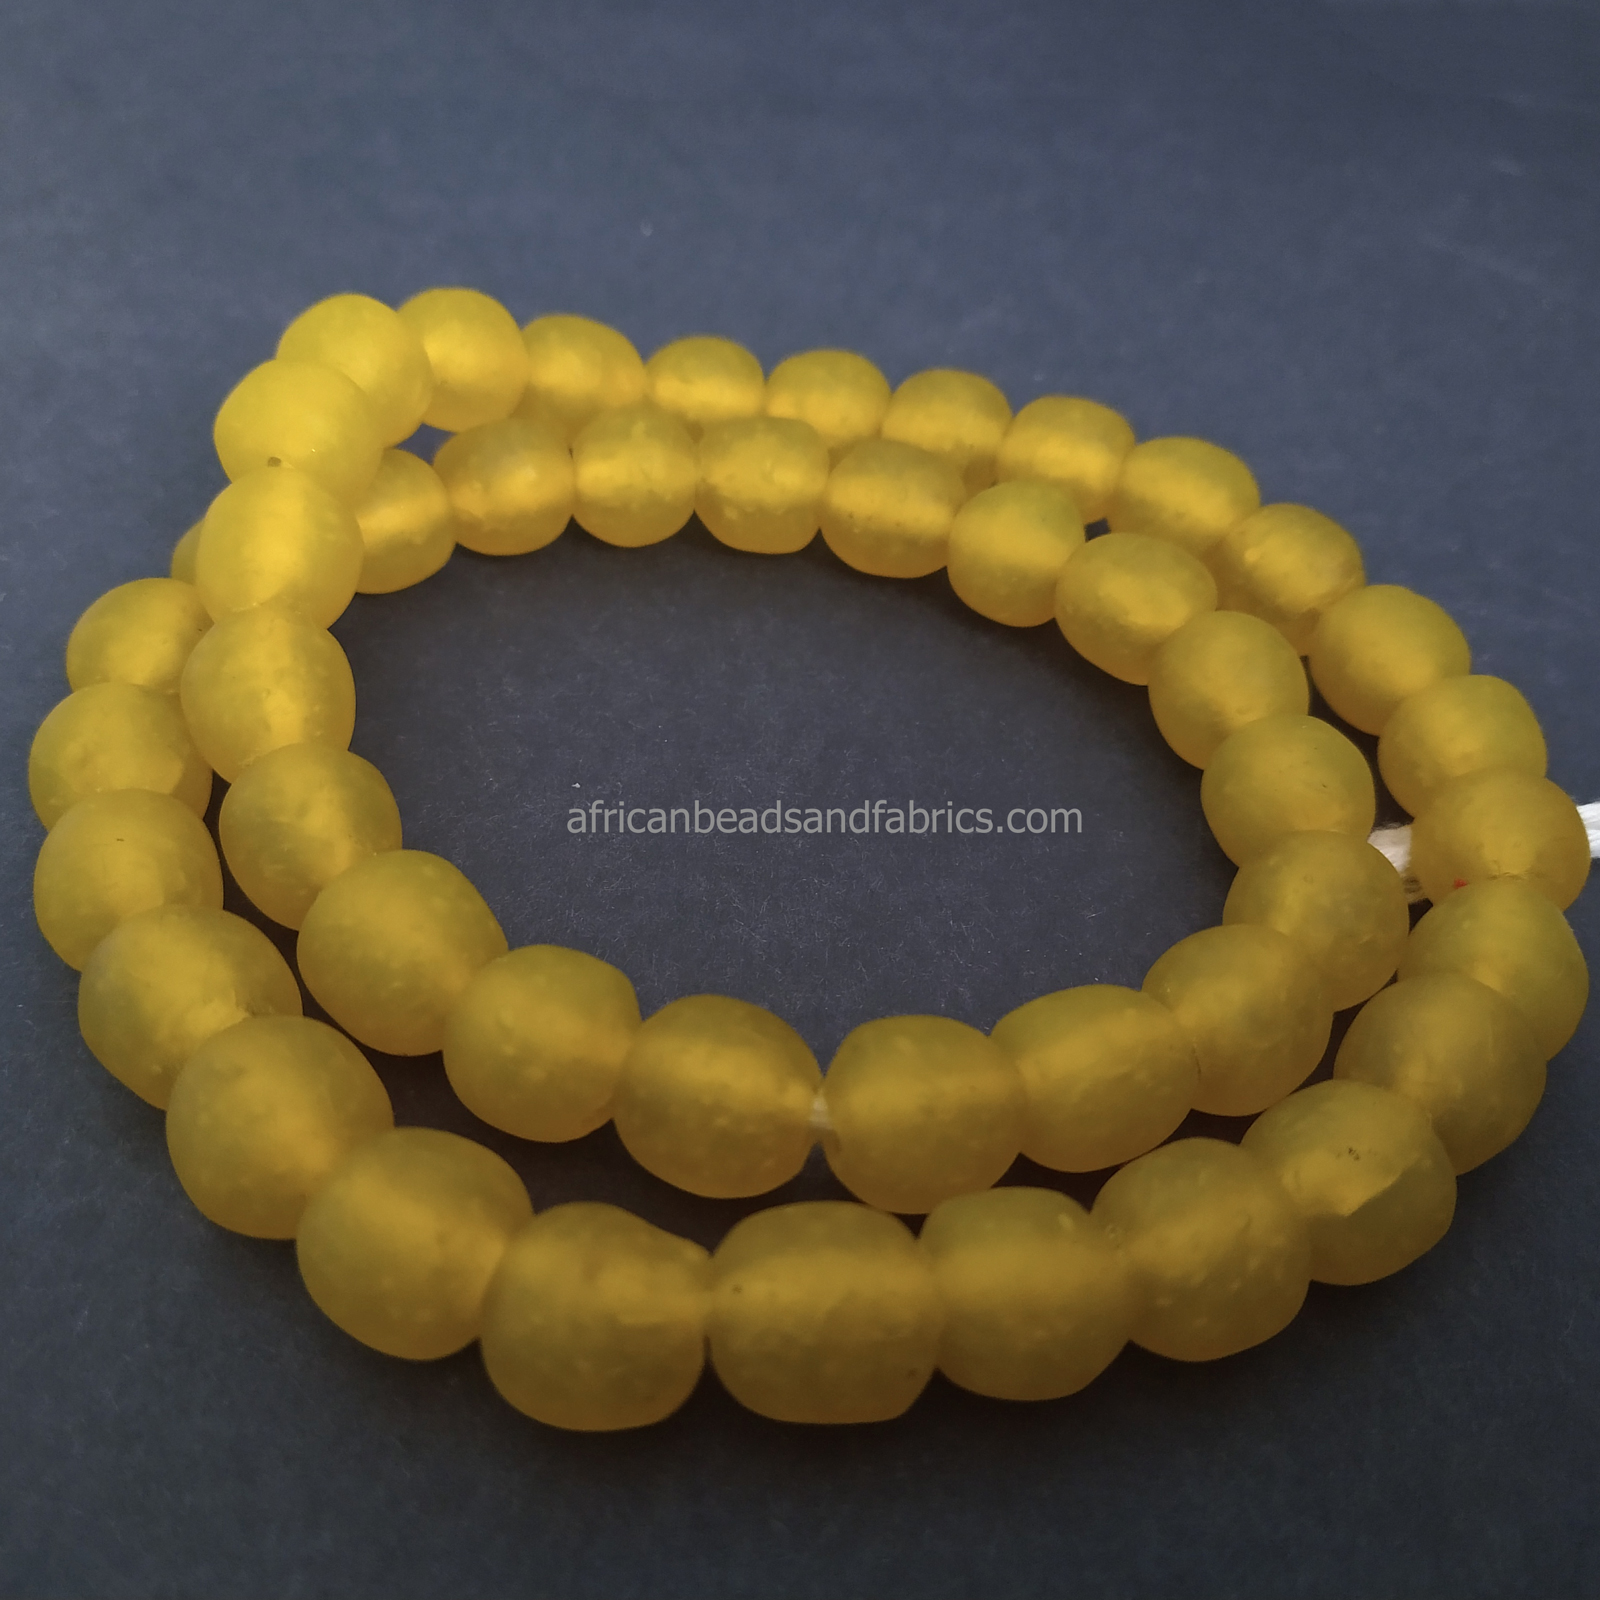 African-Beads-Ghana-KroboEthnic-Glass-Round-13-to-14-mm-yellow-round